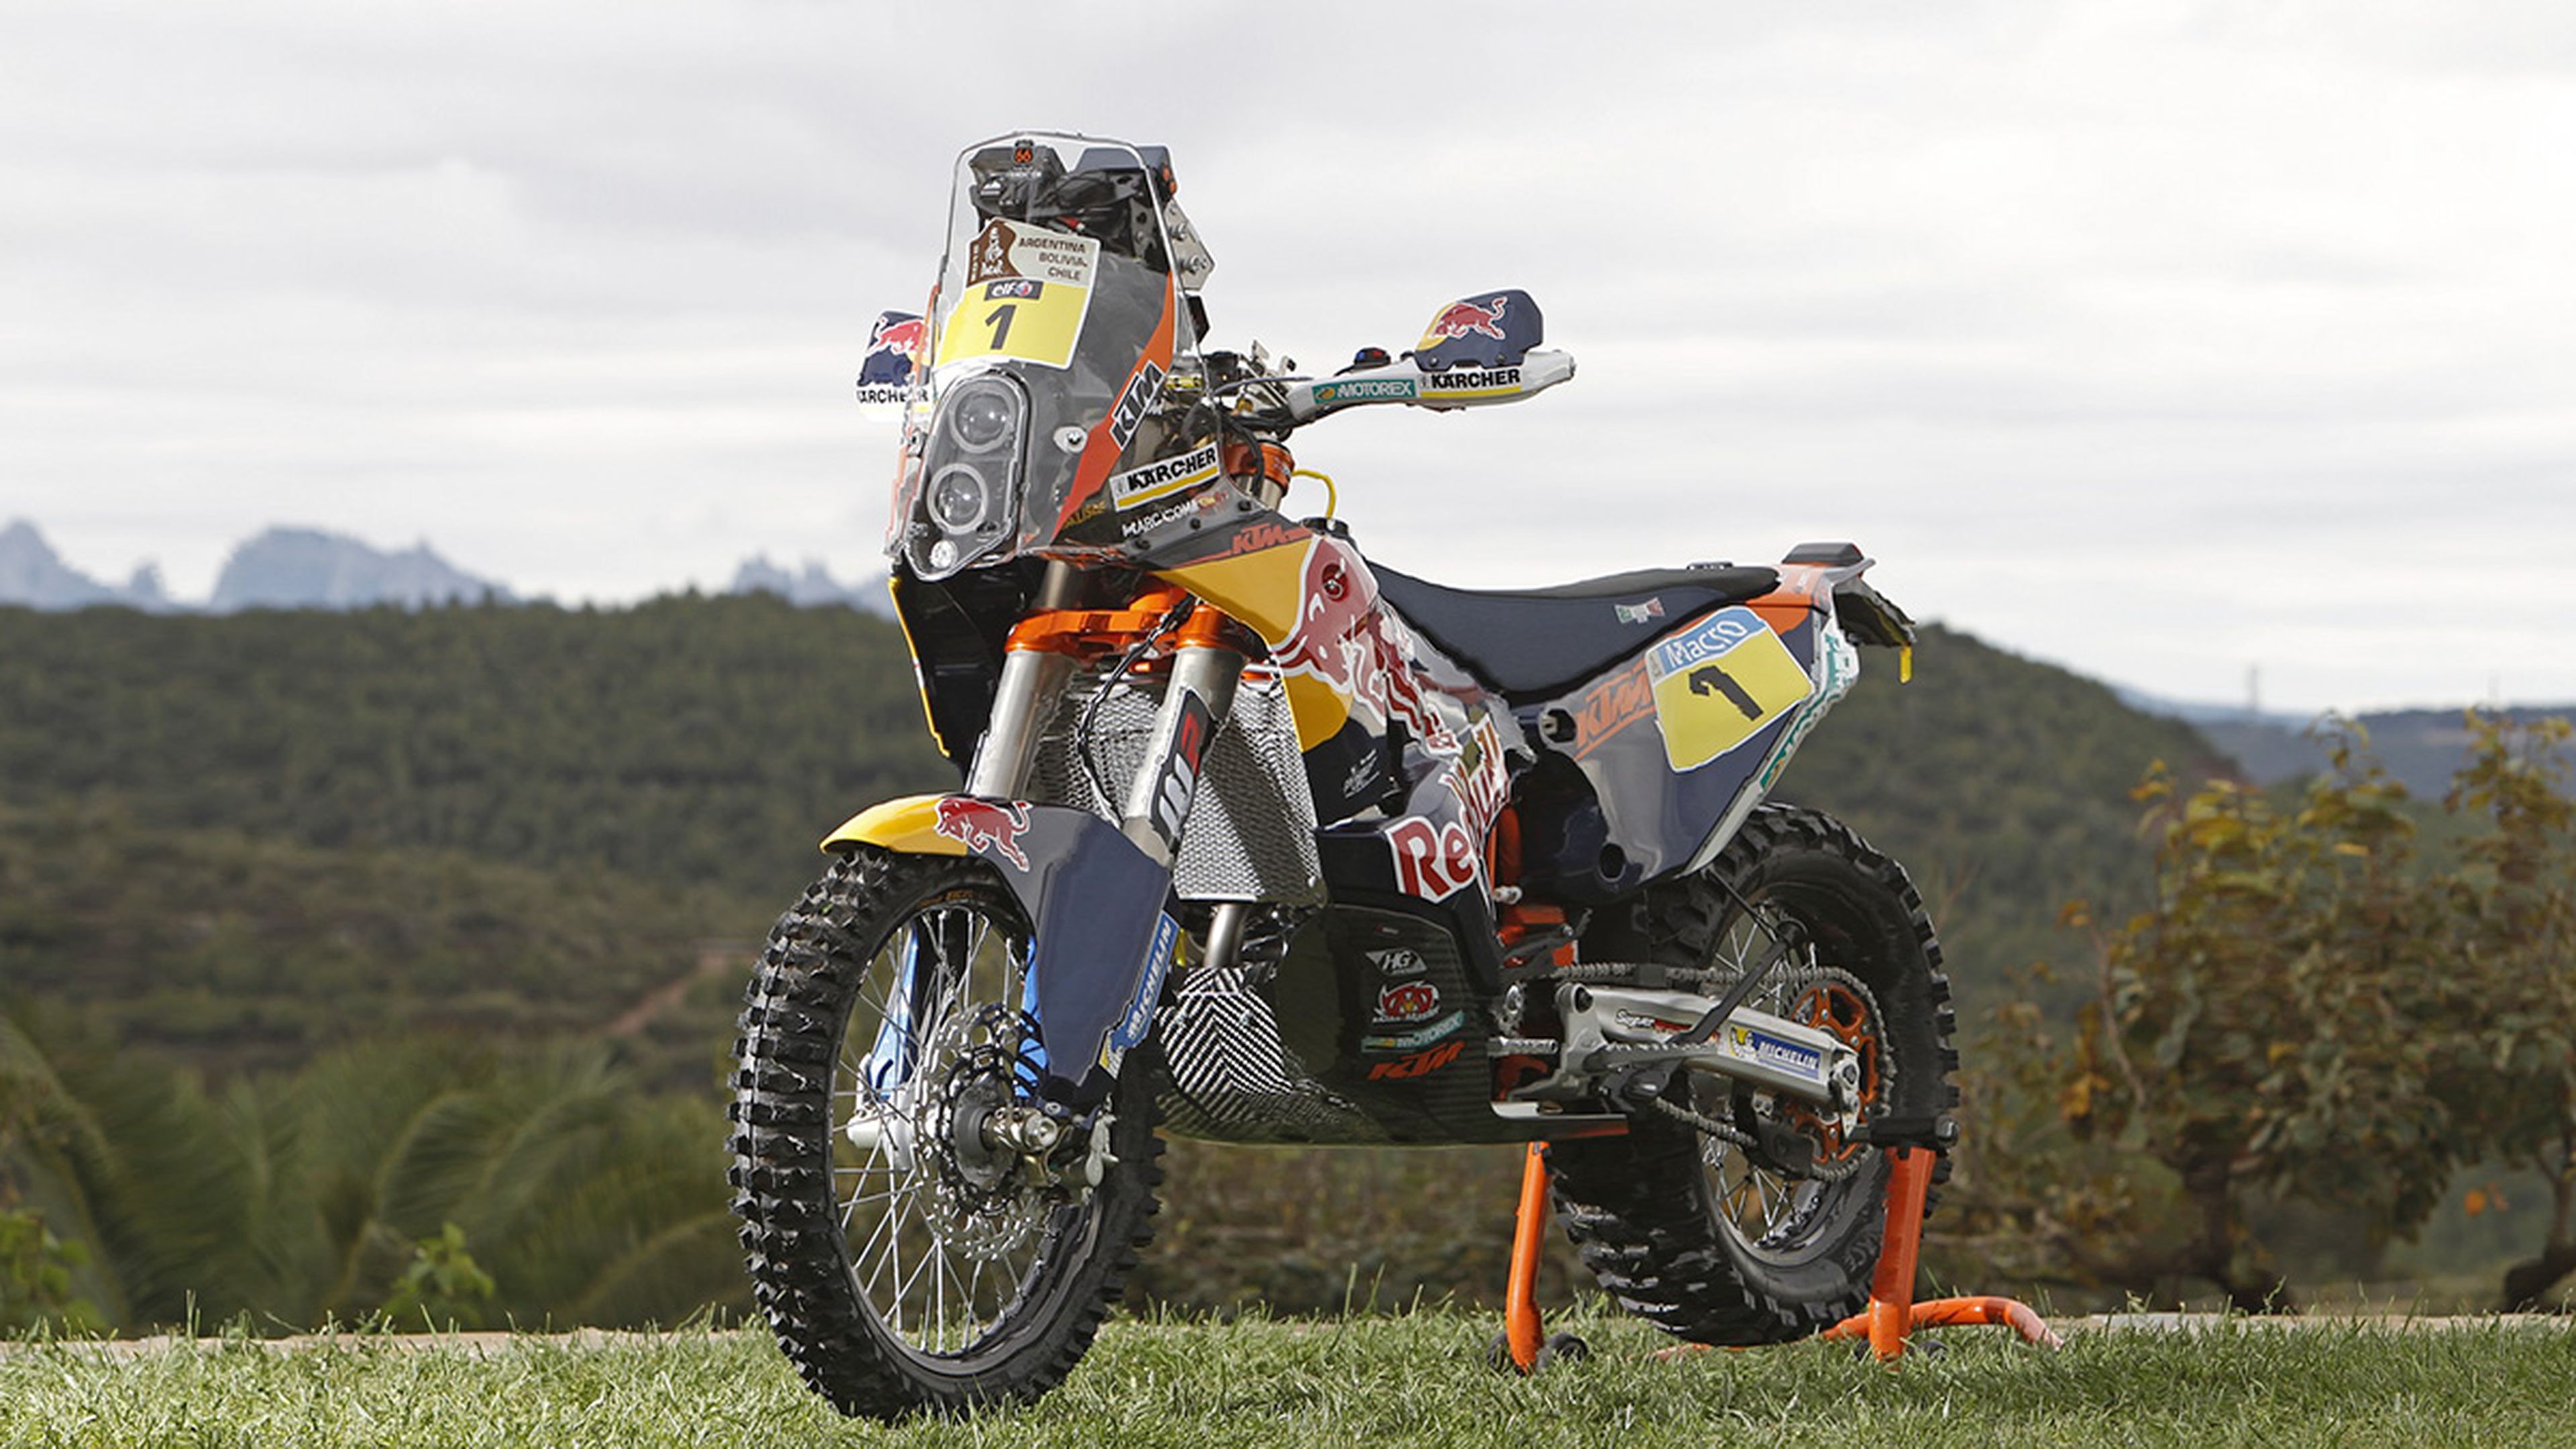 Claves de la moto de Marc Coma para ganar el Rally Dakar